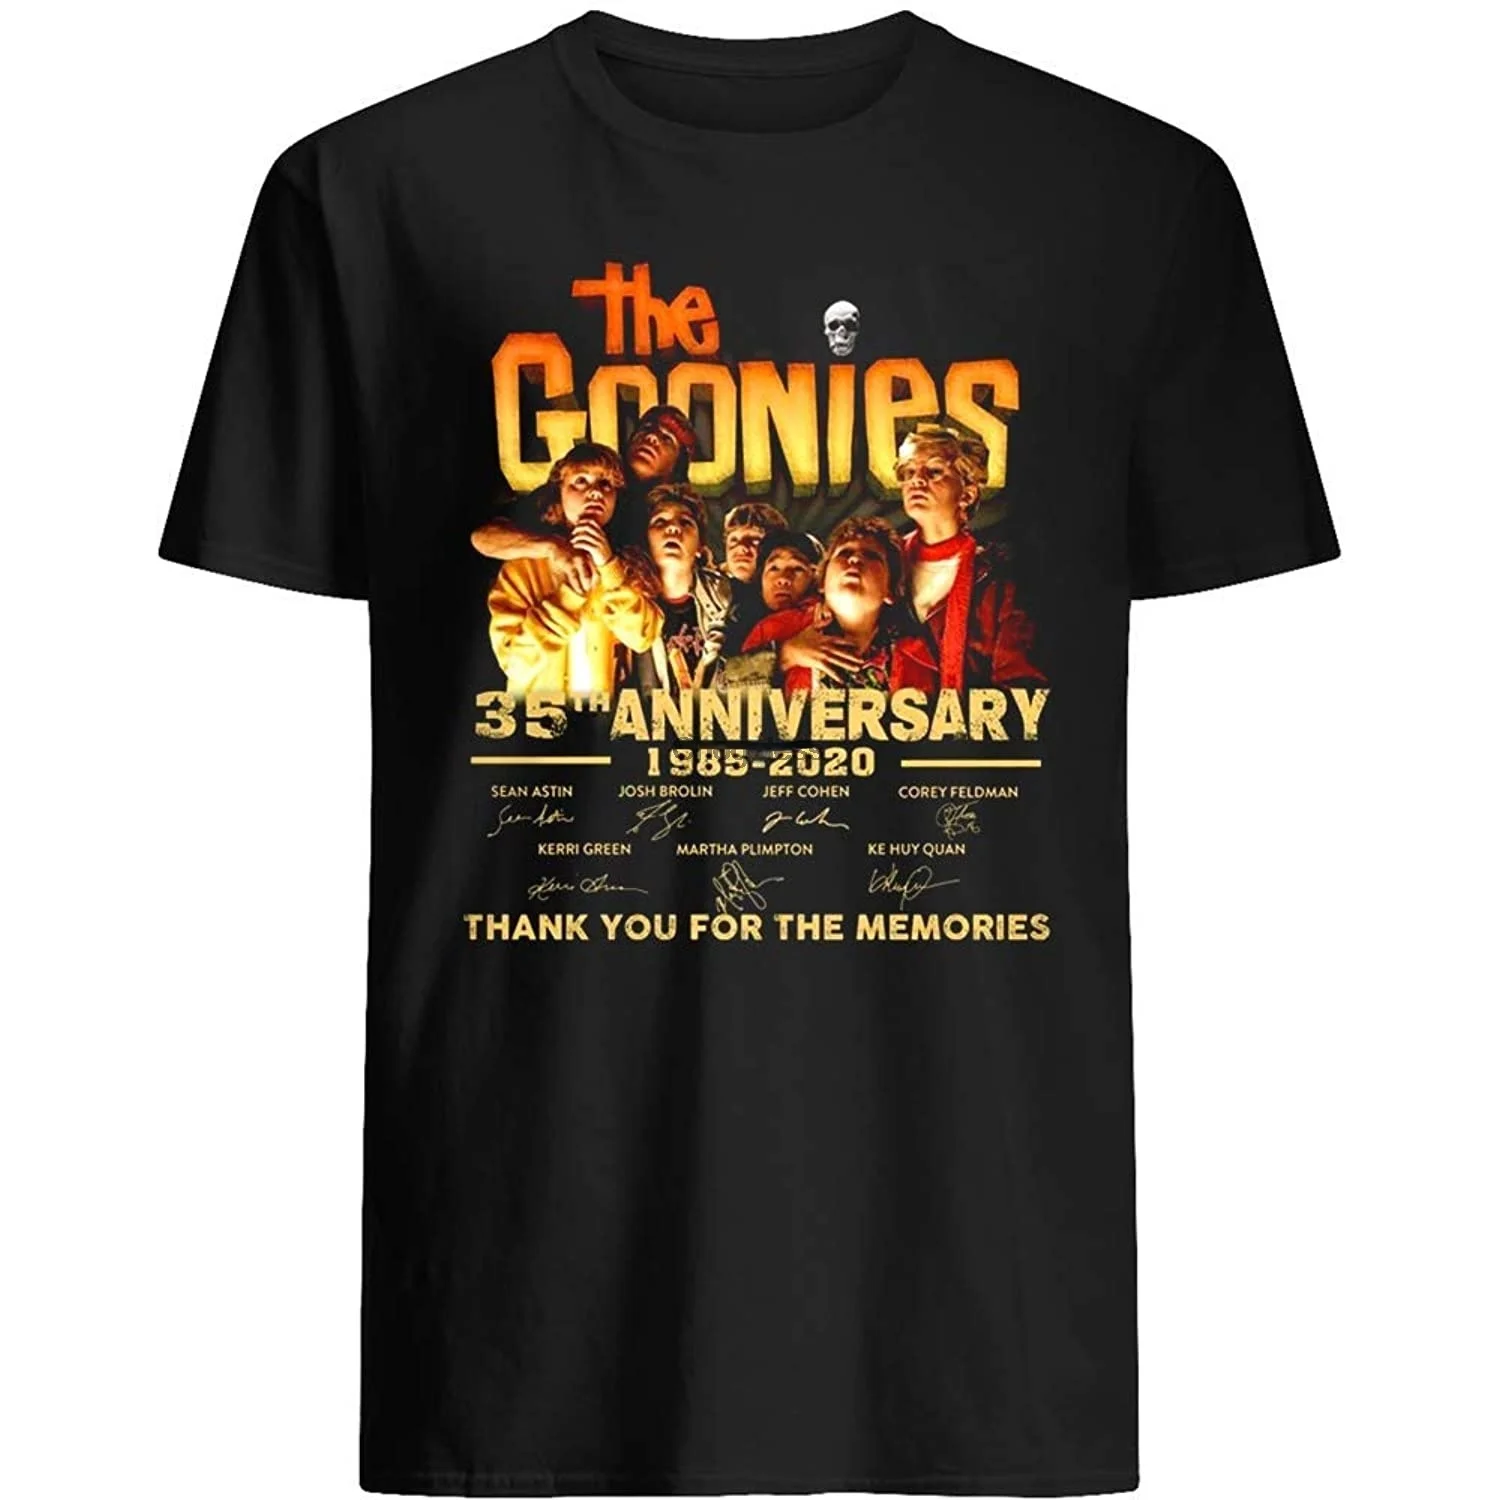 

Футболка Lykusharako The goones Film 35-я годовщина 1985-2020, с надписью Thank You, графический подарок для мужчин и женщин, Подарочная футболка